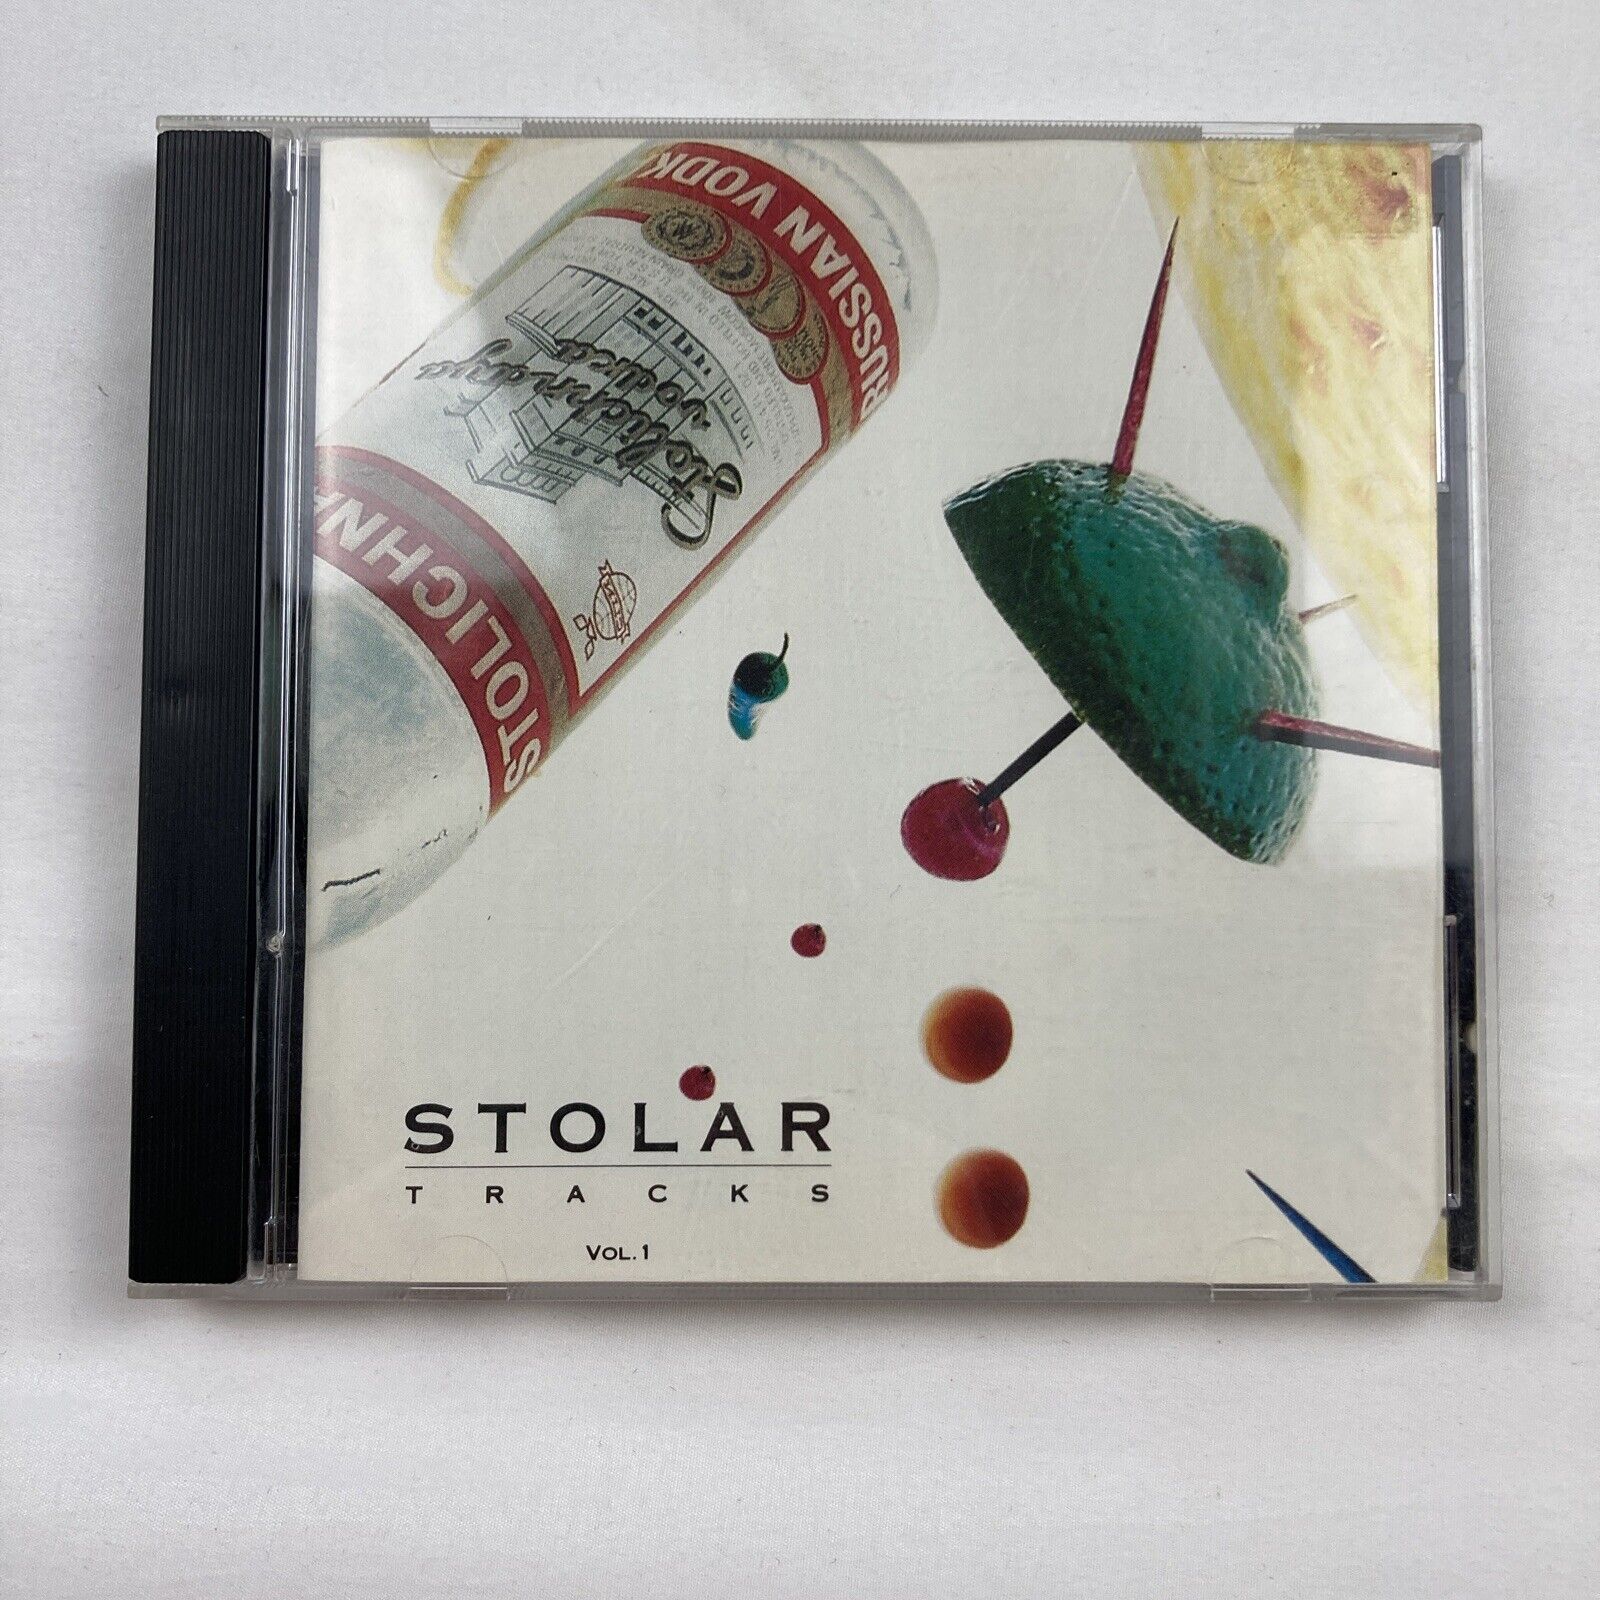 VA – Stolar Tracks Vol.1 (CD, 1992) Alt Rock Compilation Indie Hip Hop